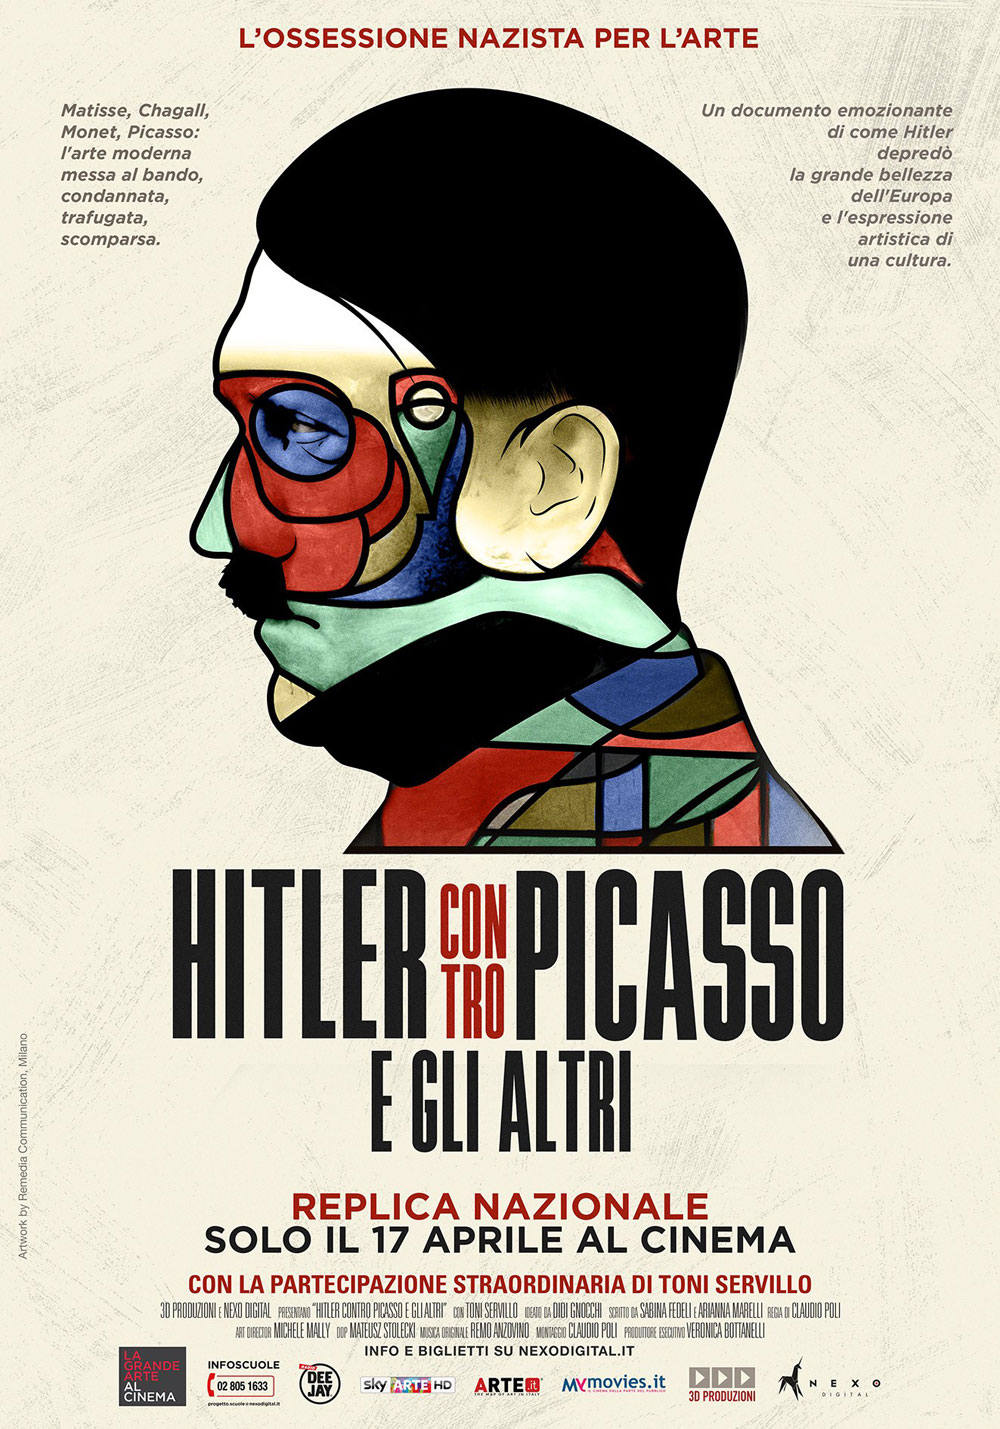 Grande successo per Hitler contro Picasso: replica nazionale il 17 aprile